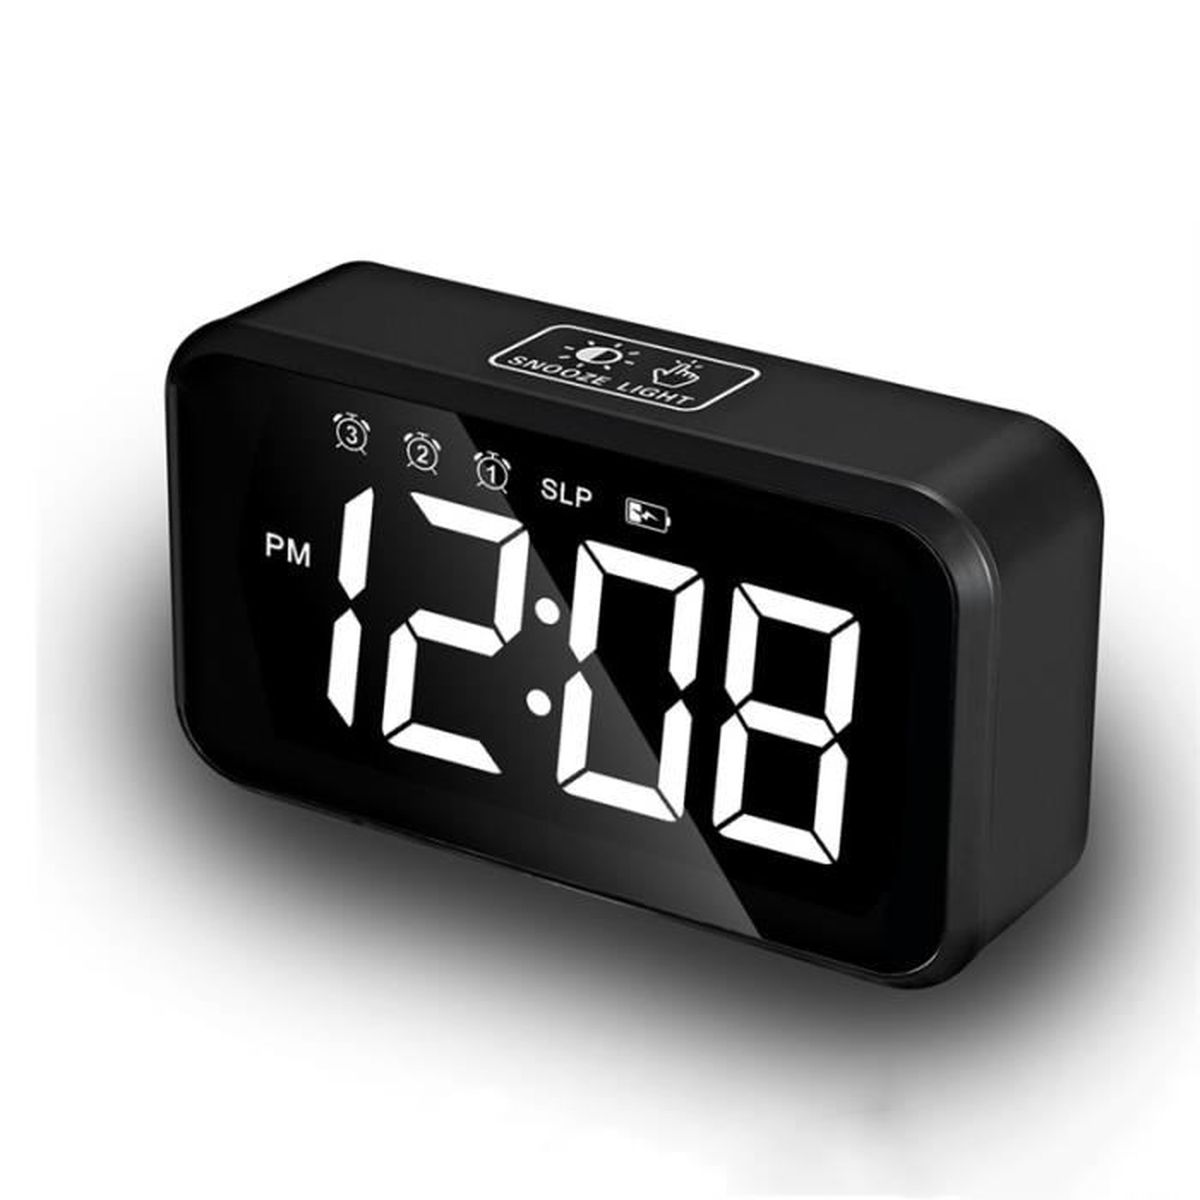 LED Réveil numérique Multifonction électronique Snooze Grand écran décoratif Horloge Accueil Mengonee 